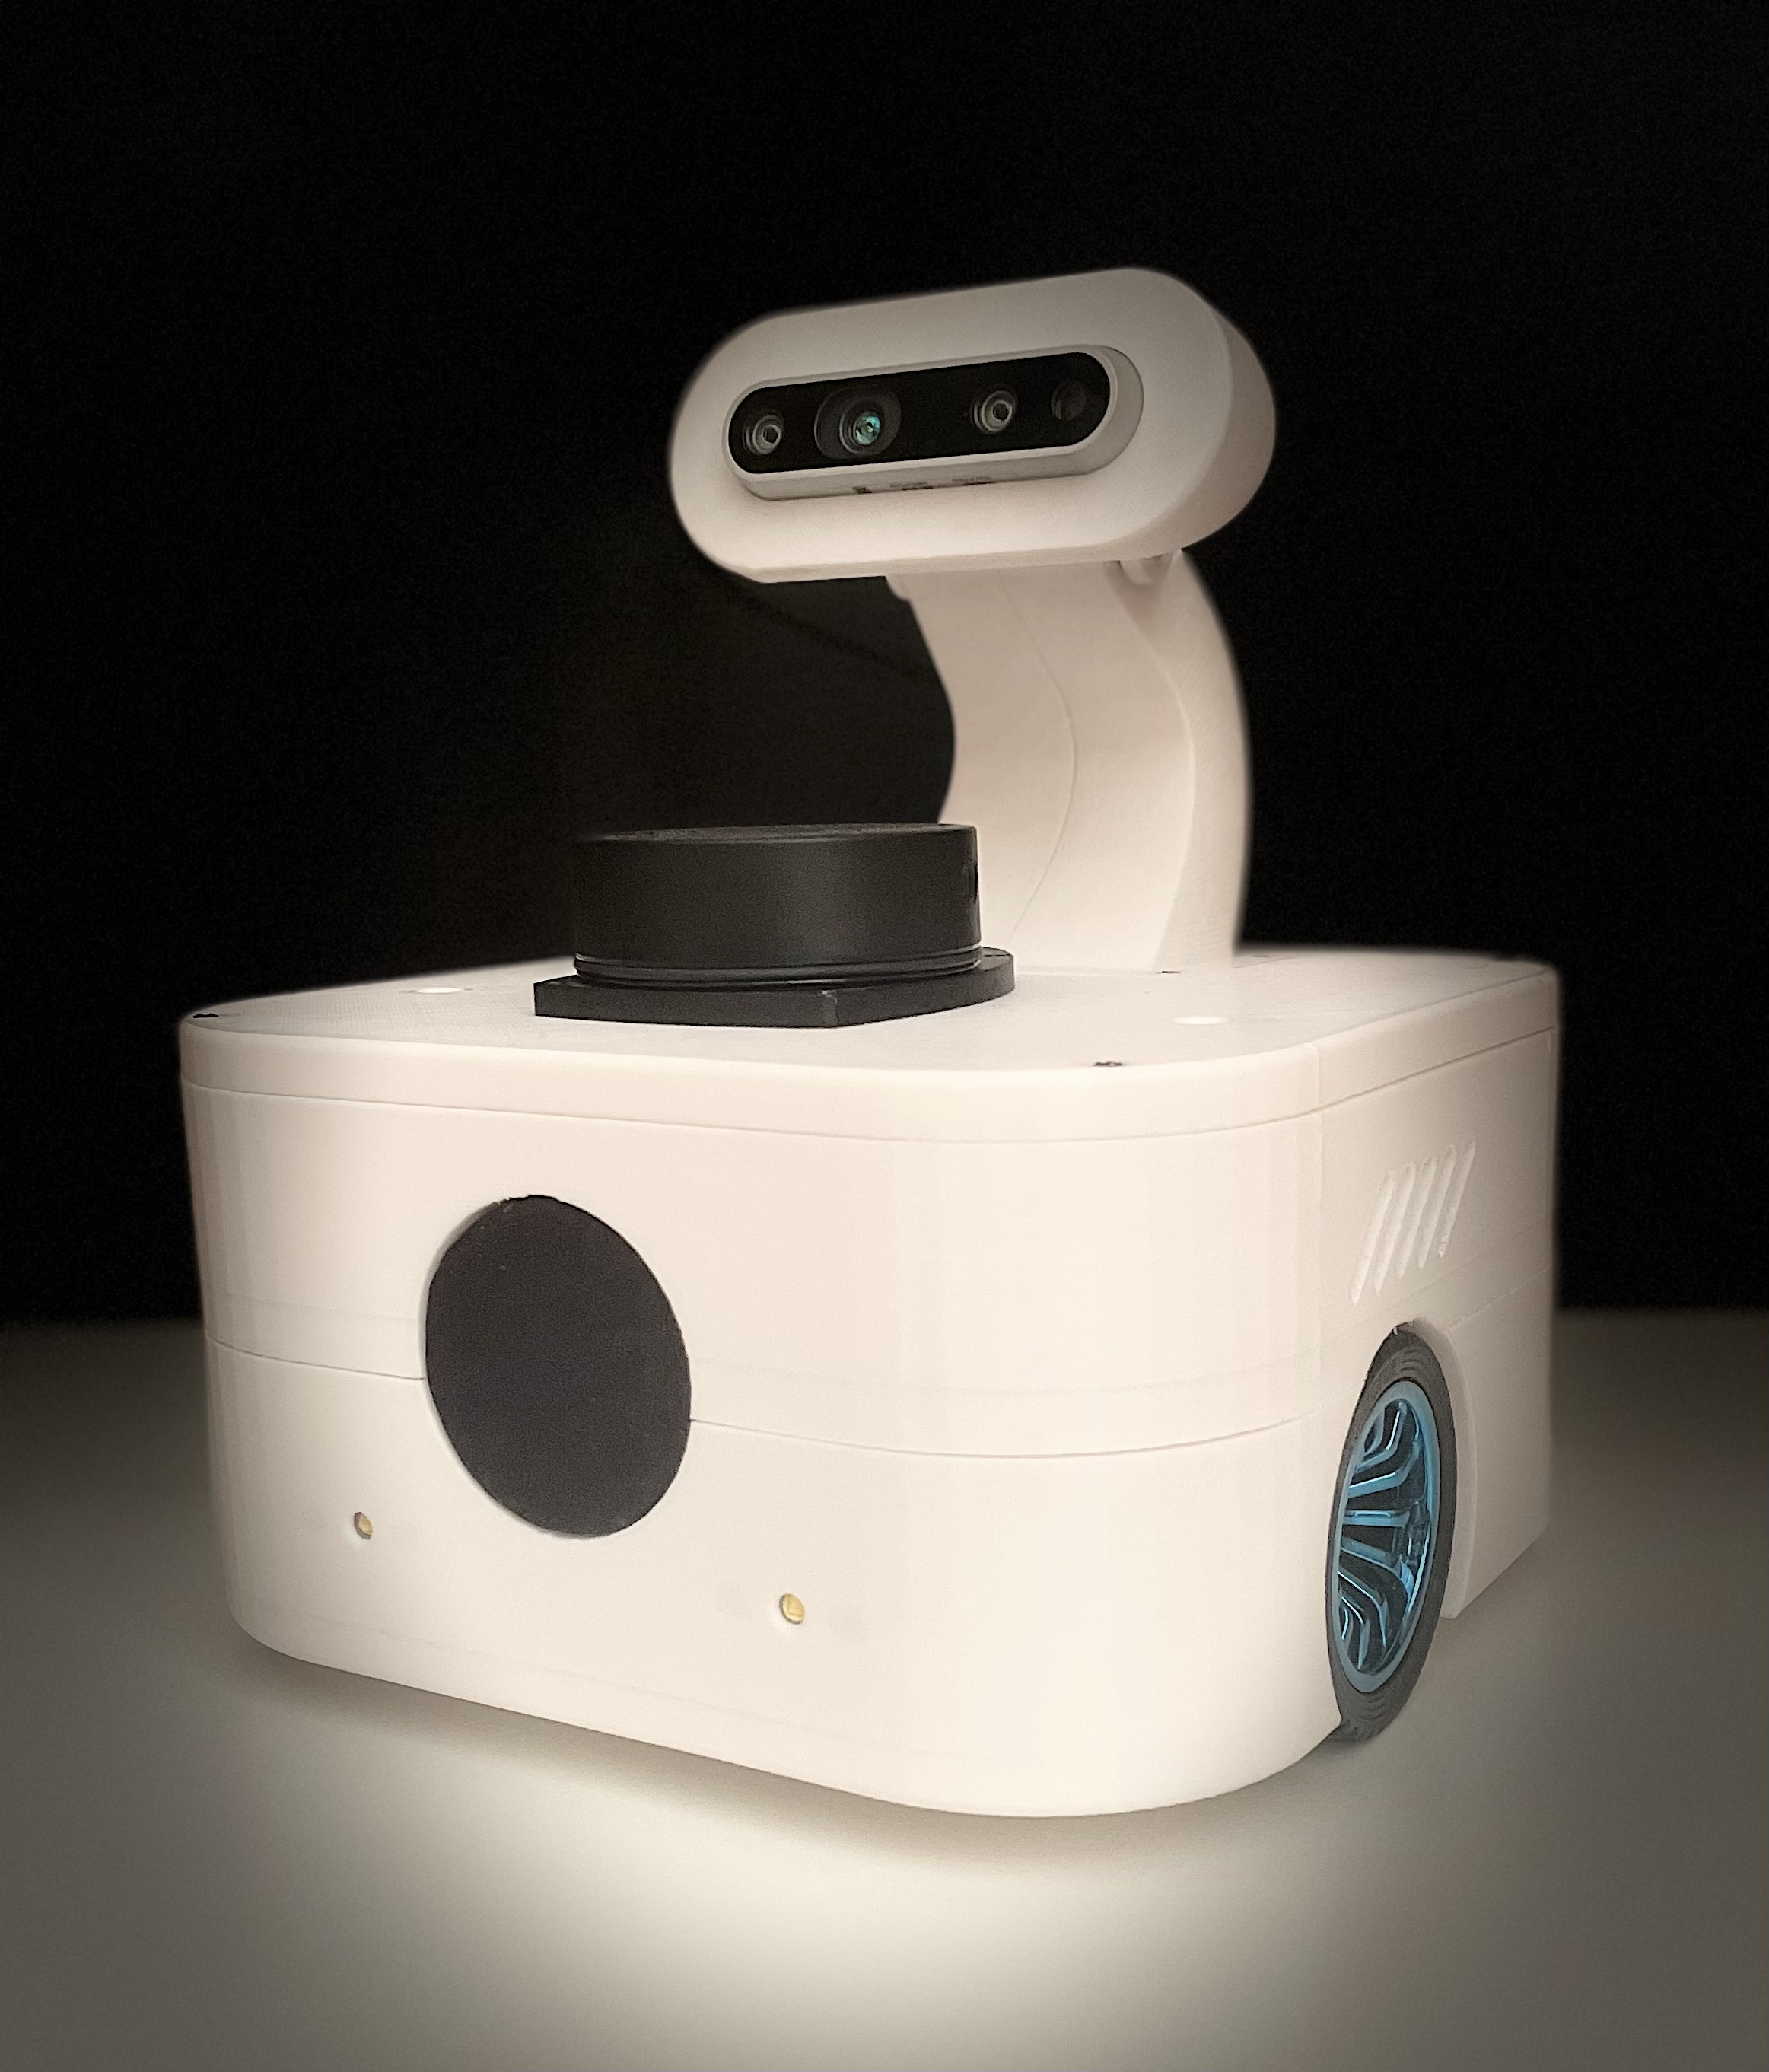 Argo, the intelligent autonomous robot for your home